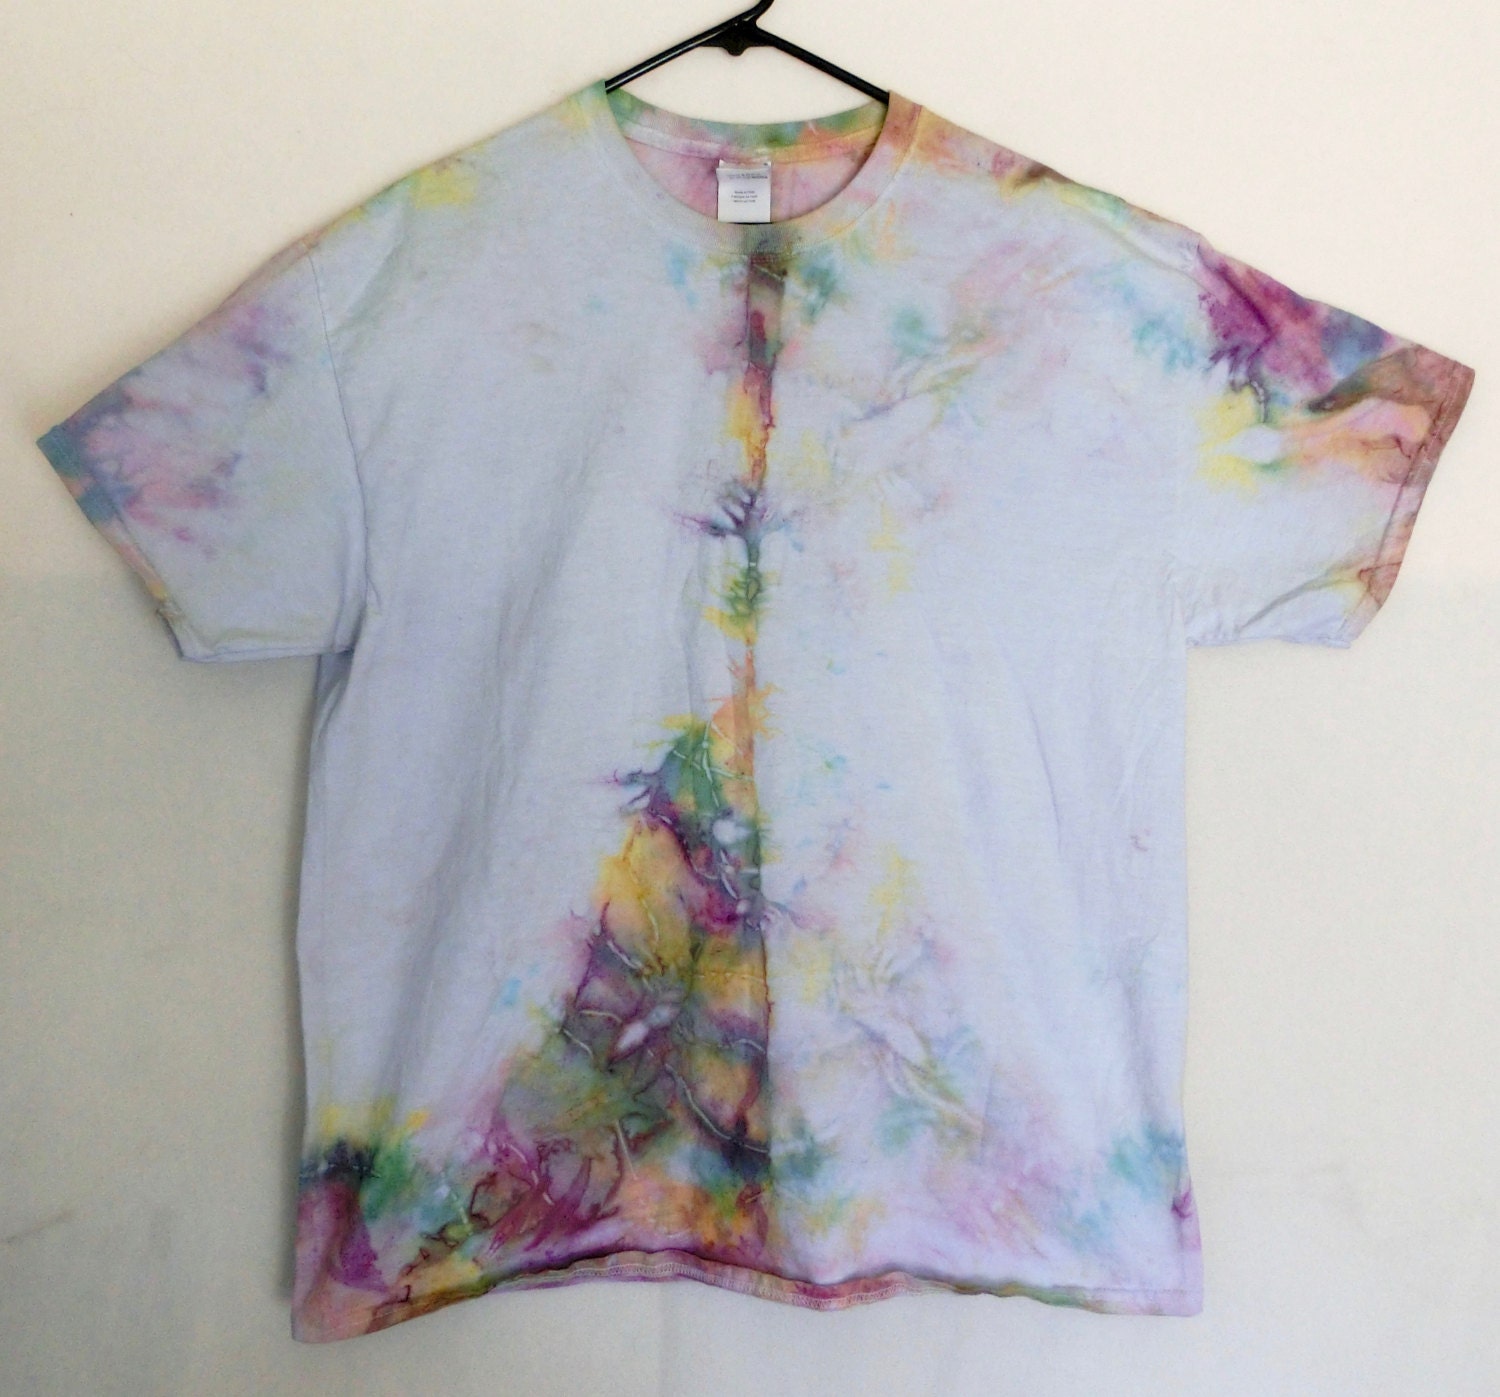 A4 XL Pastel prismatic tie-dye t-shirt Xlarge